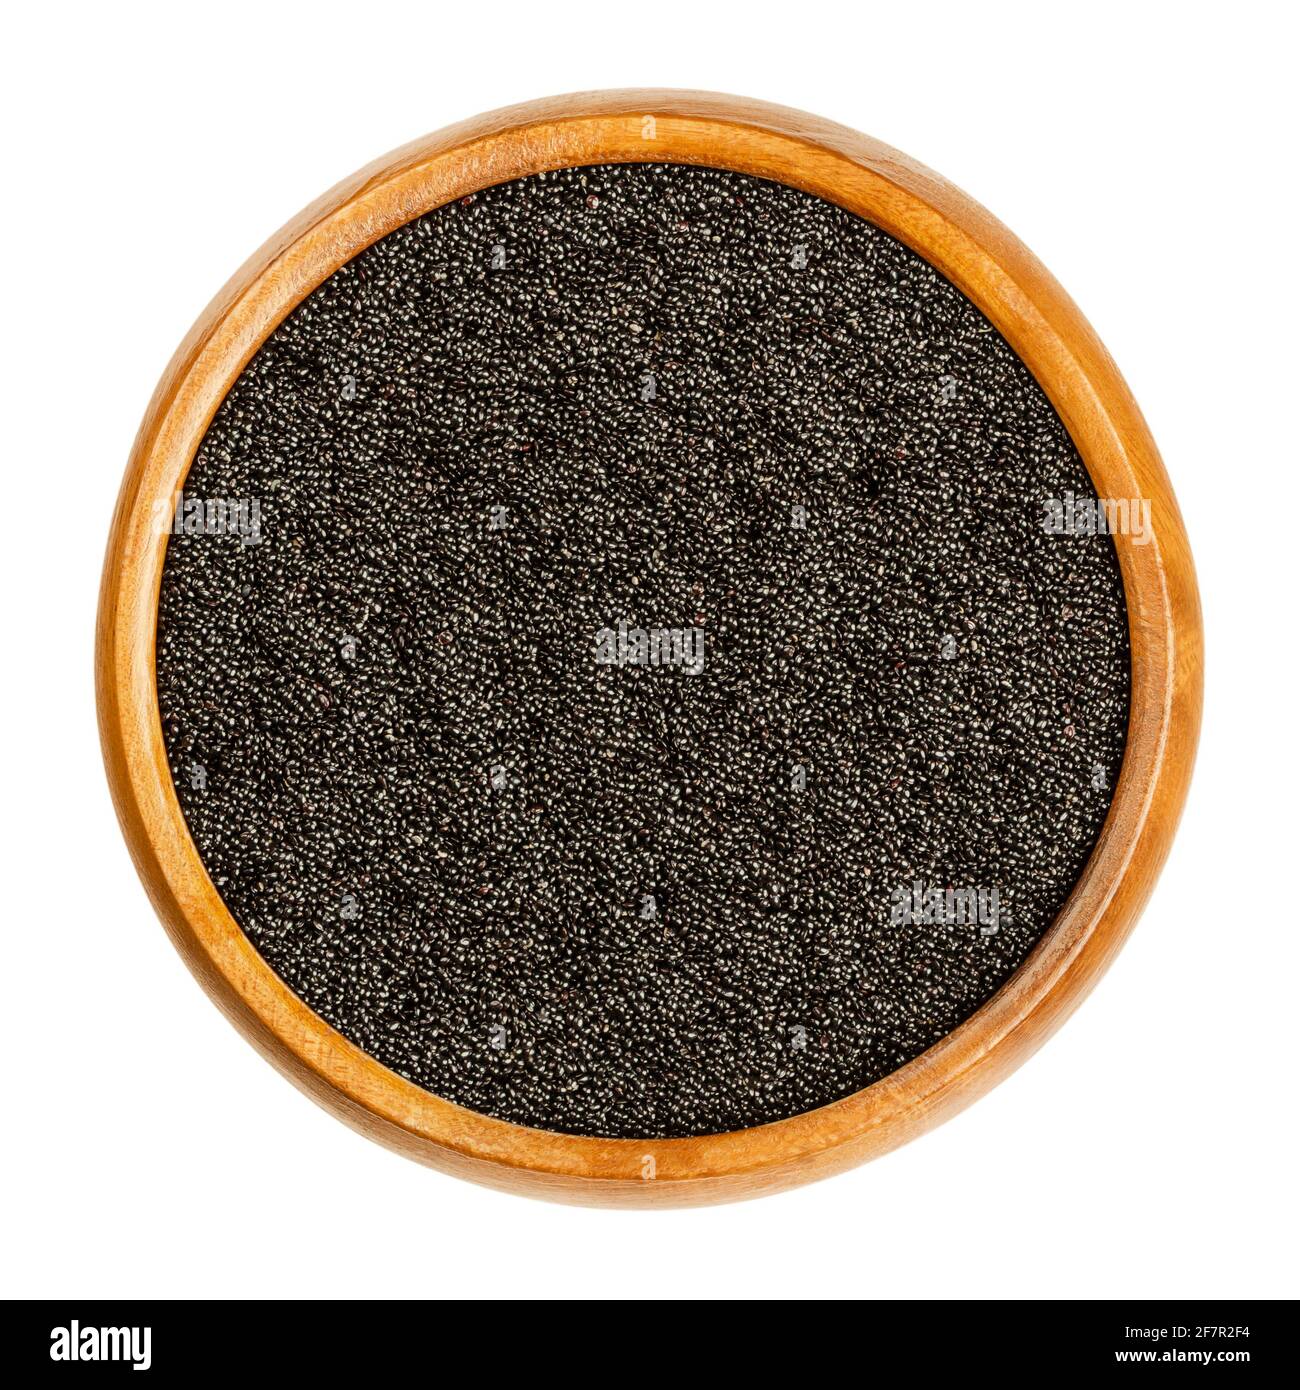 Amaranto nero in una ciotola di legno. Semi di Amaranthus, un alimento pseudocereale e di base e fonte di proteina degli Aztechi, banditi dai conquistadores. Foto Stock